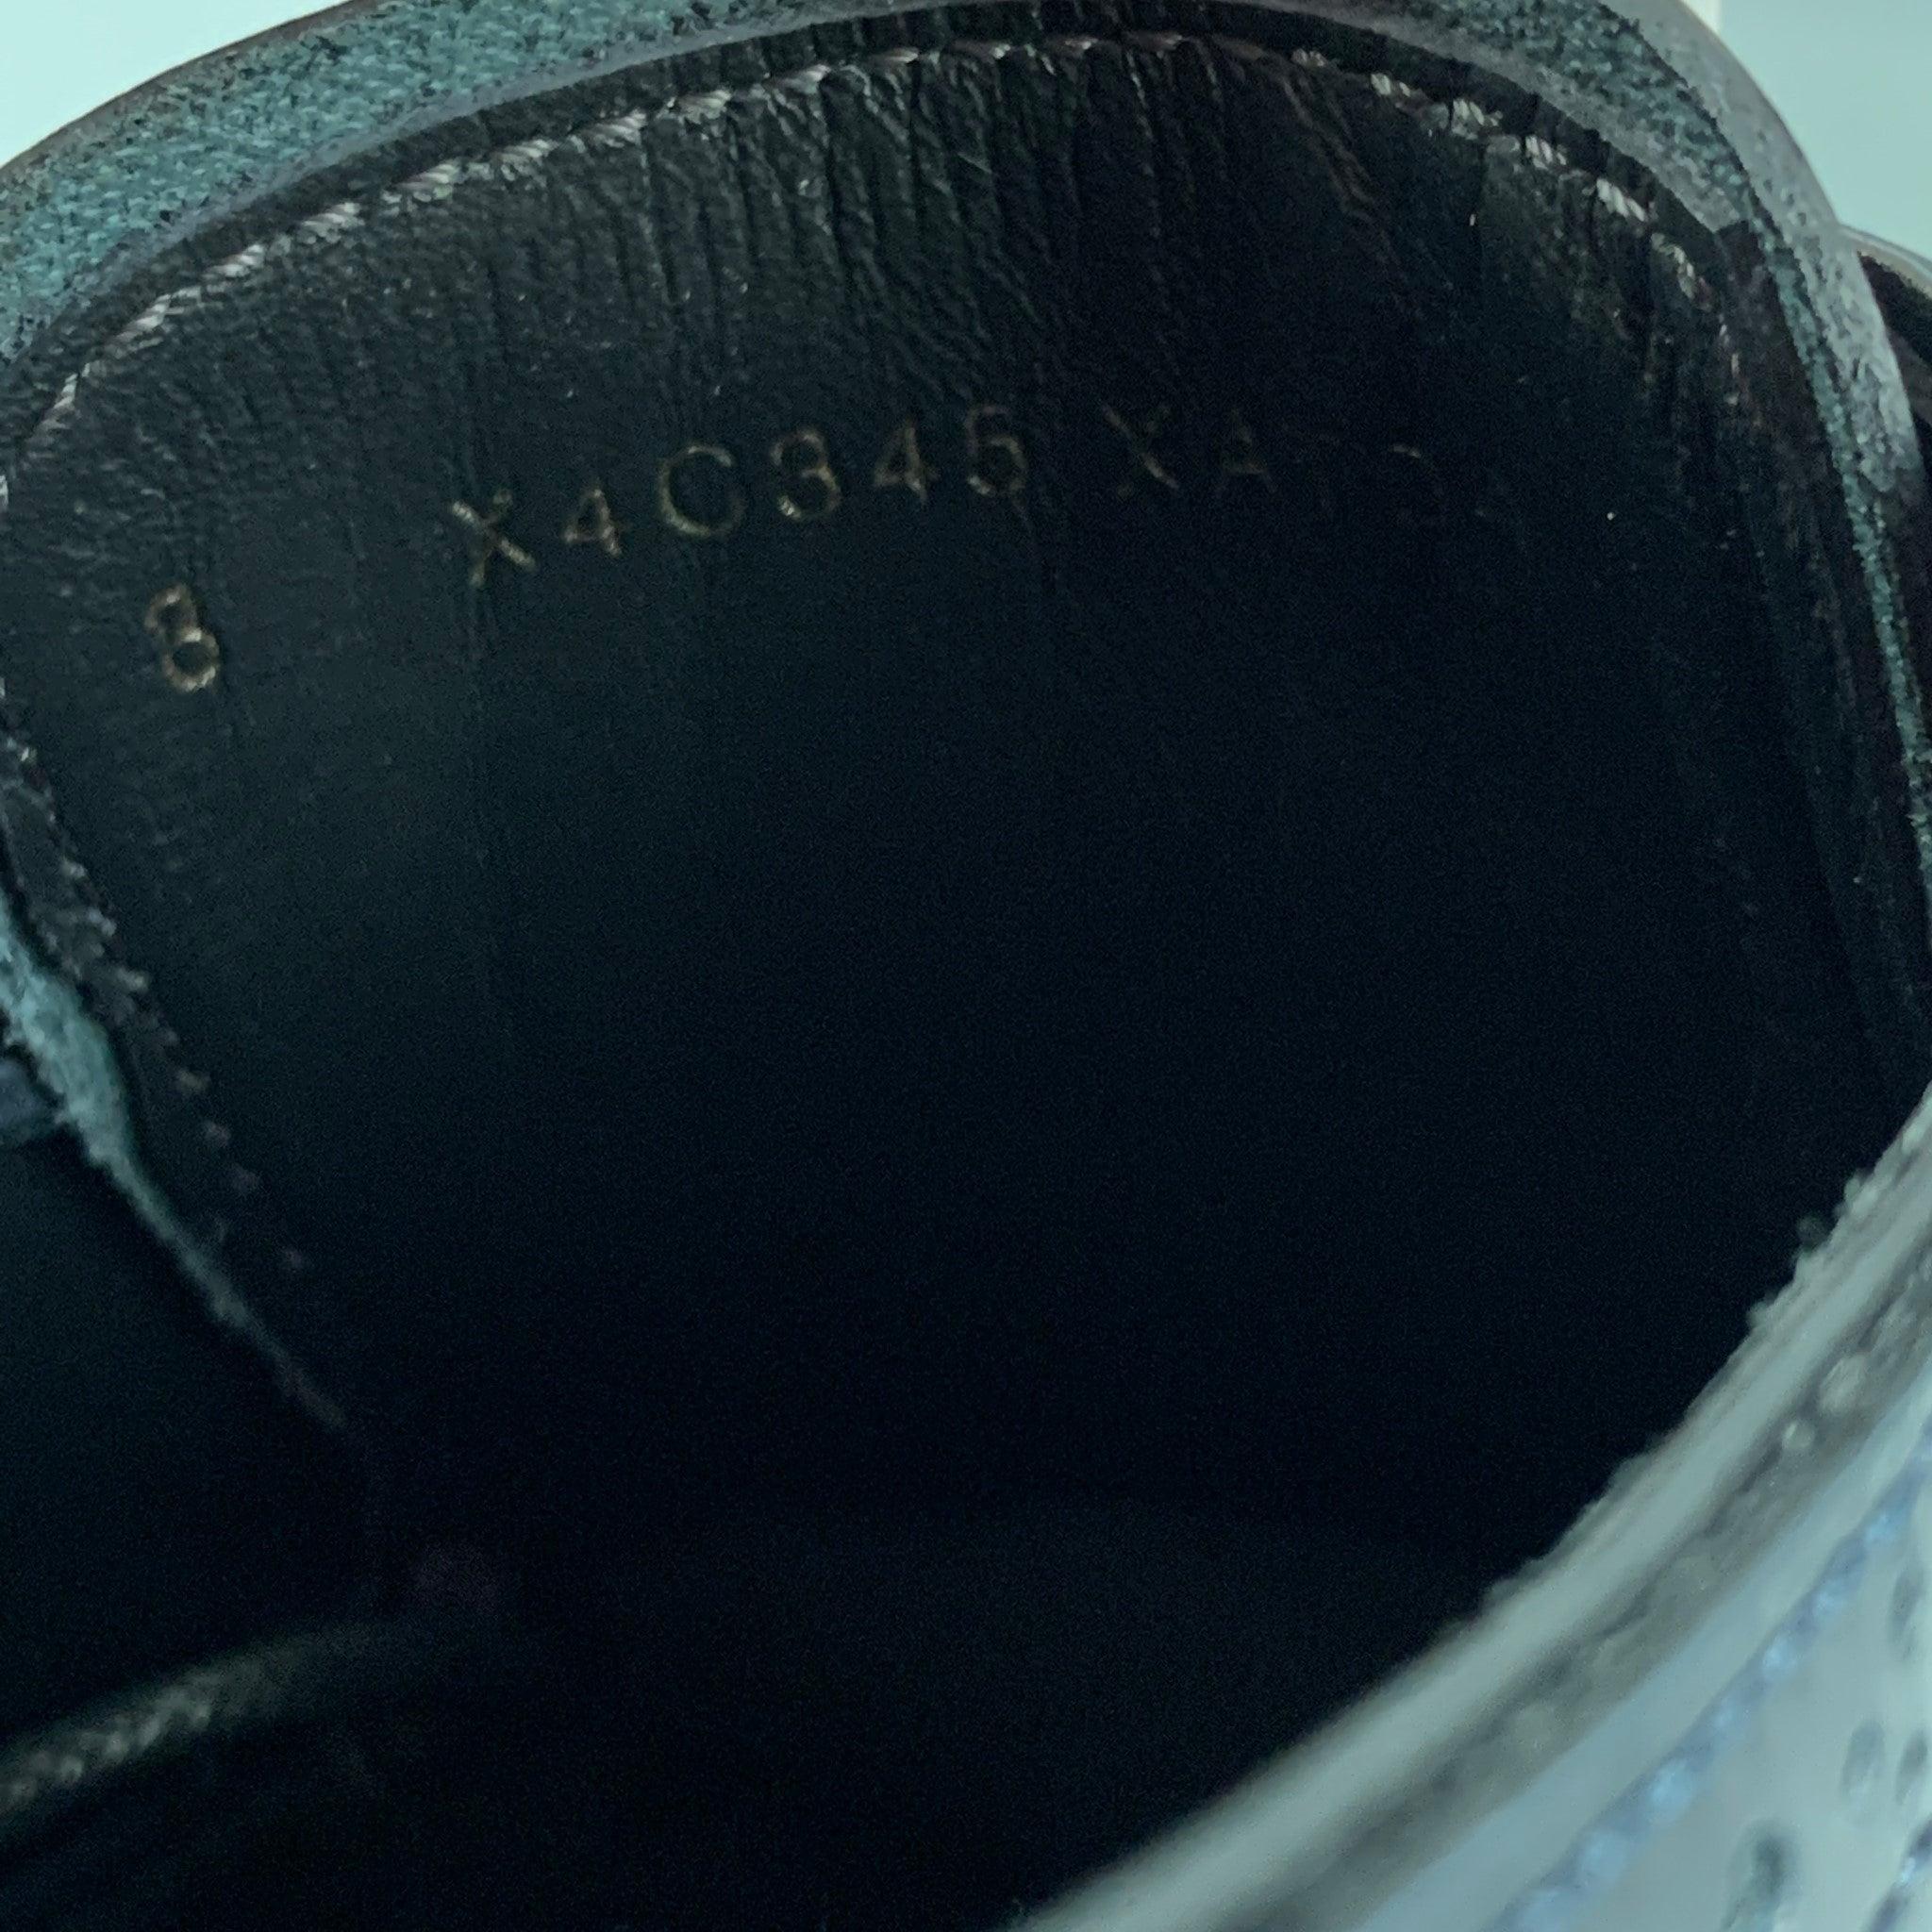 EMPORIO ARMANI - Chaussures à lacets en cuir perforé bleu marine, taille 9 2